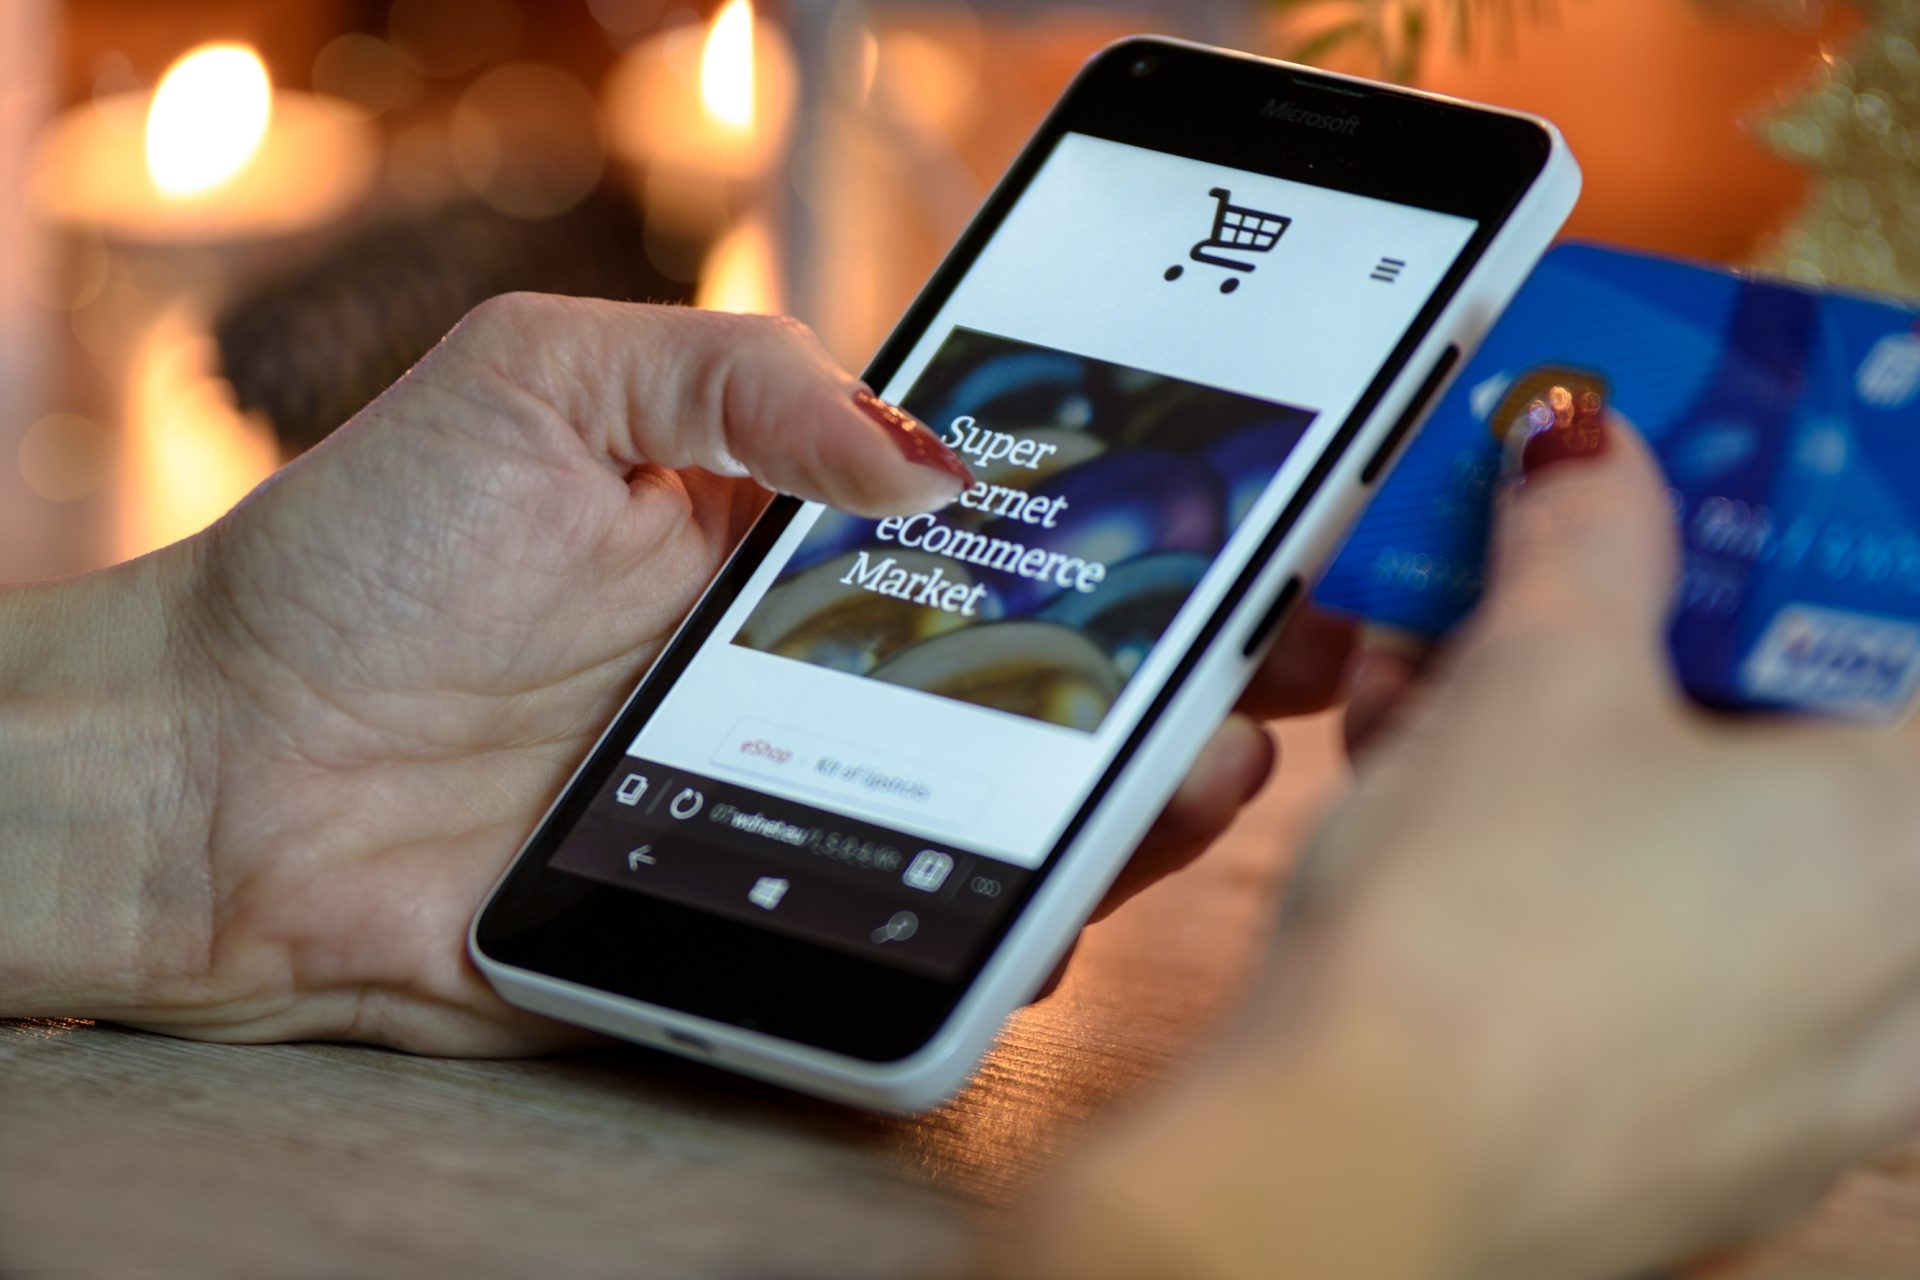 Una consumidora hace compras en un supermercado "online" a través de su teléfono móvil. Efeagro